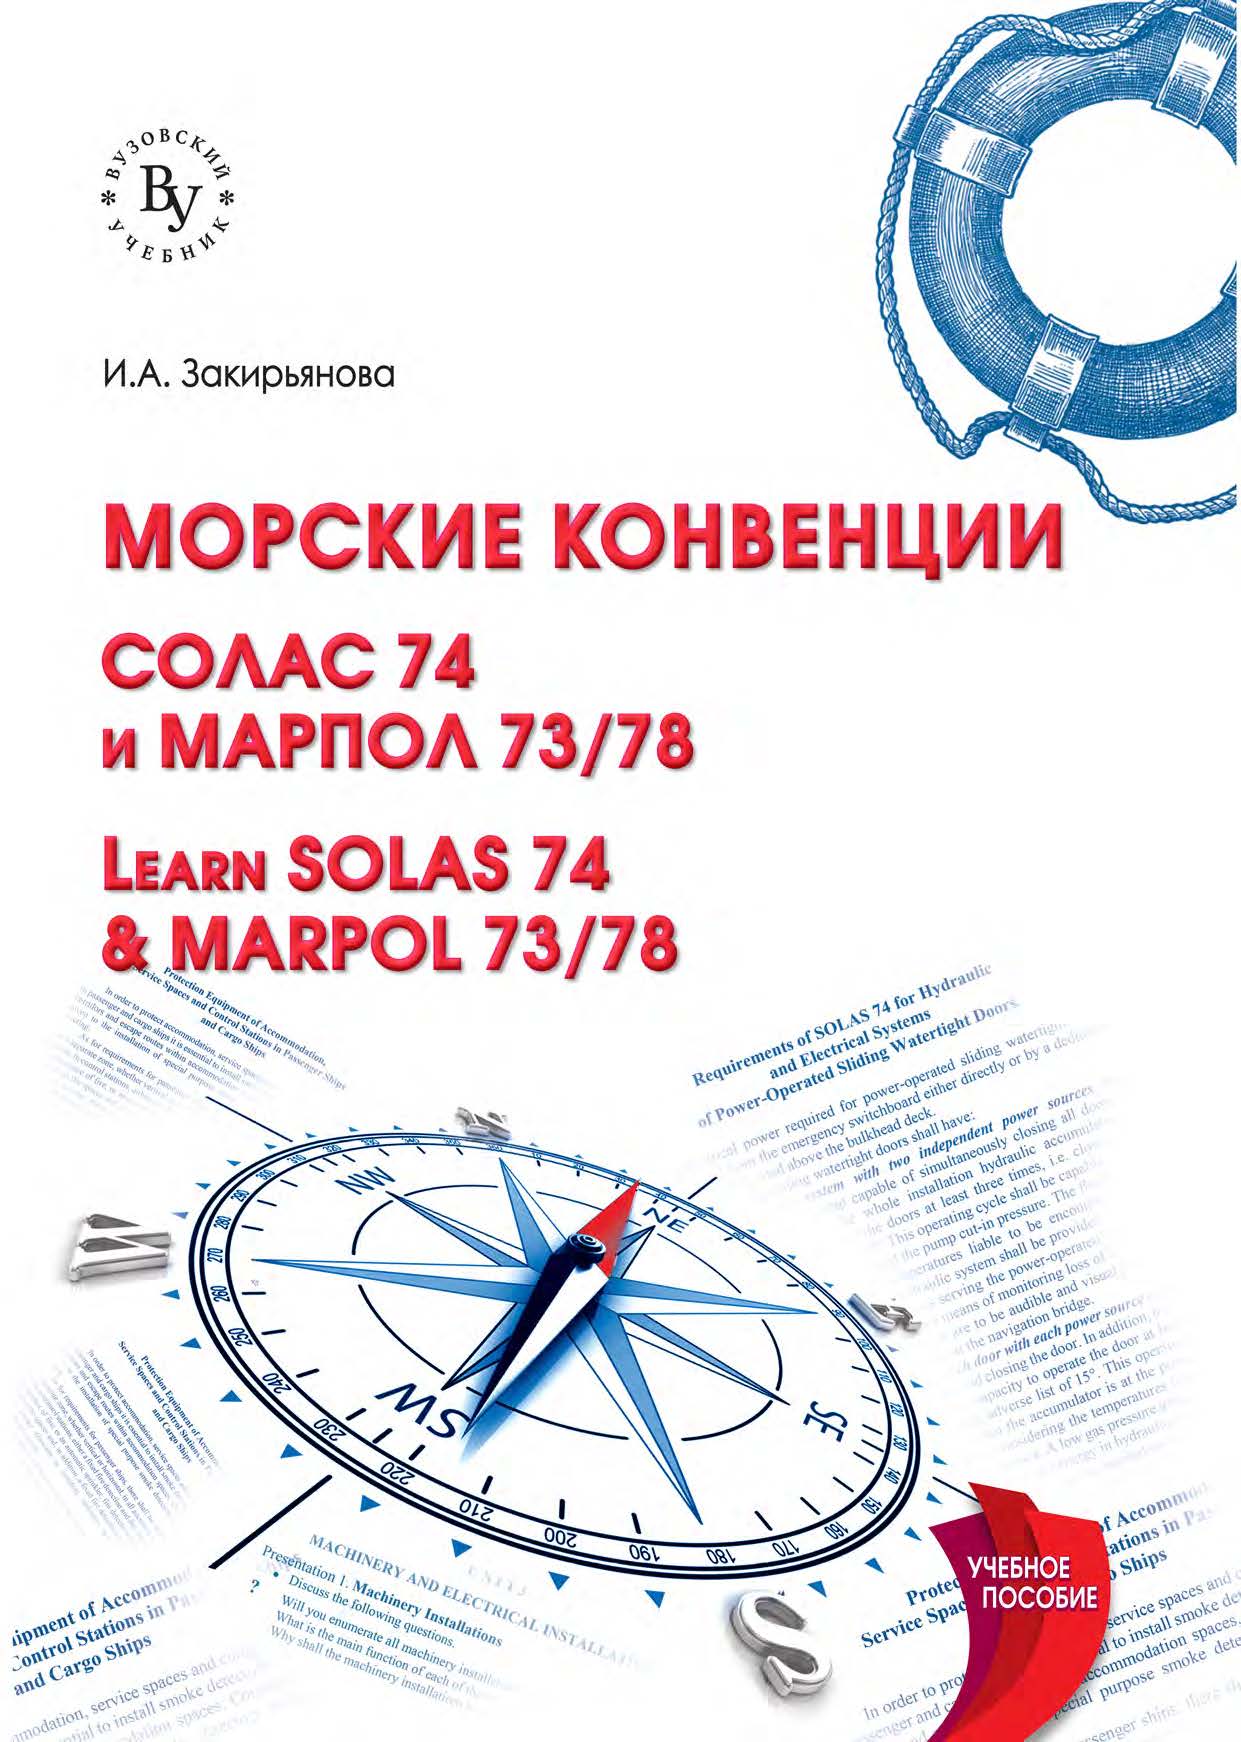             Морские конвенции: СОЛАС 74 и МАРПОЛ 73/78
    